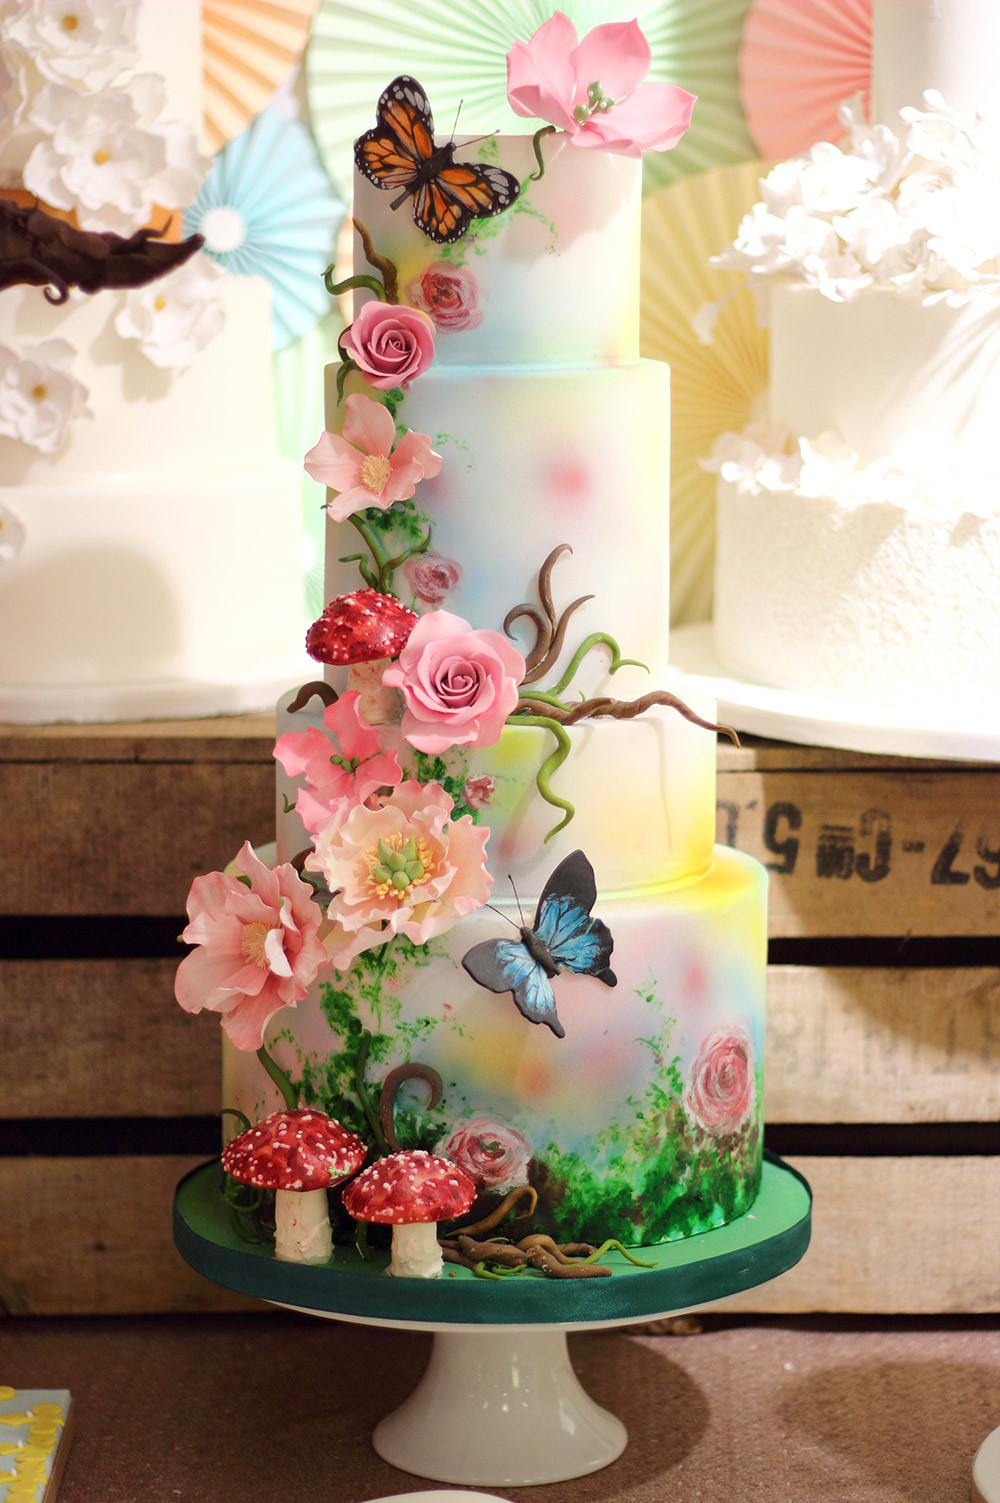 Amazing Wedding Cakes the Best Ideas for Amazing Wedding Cakes